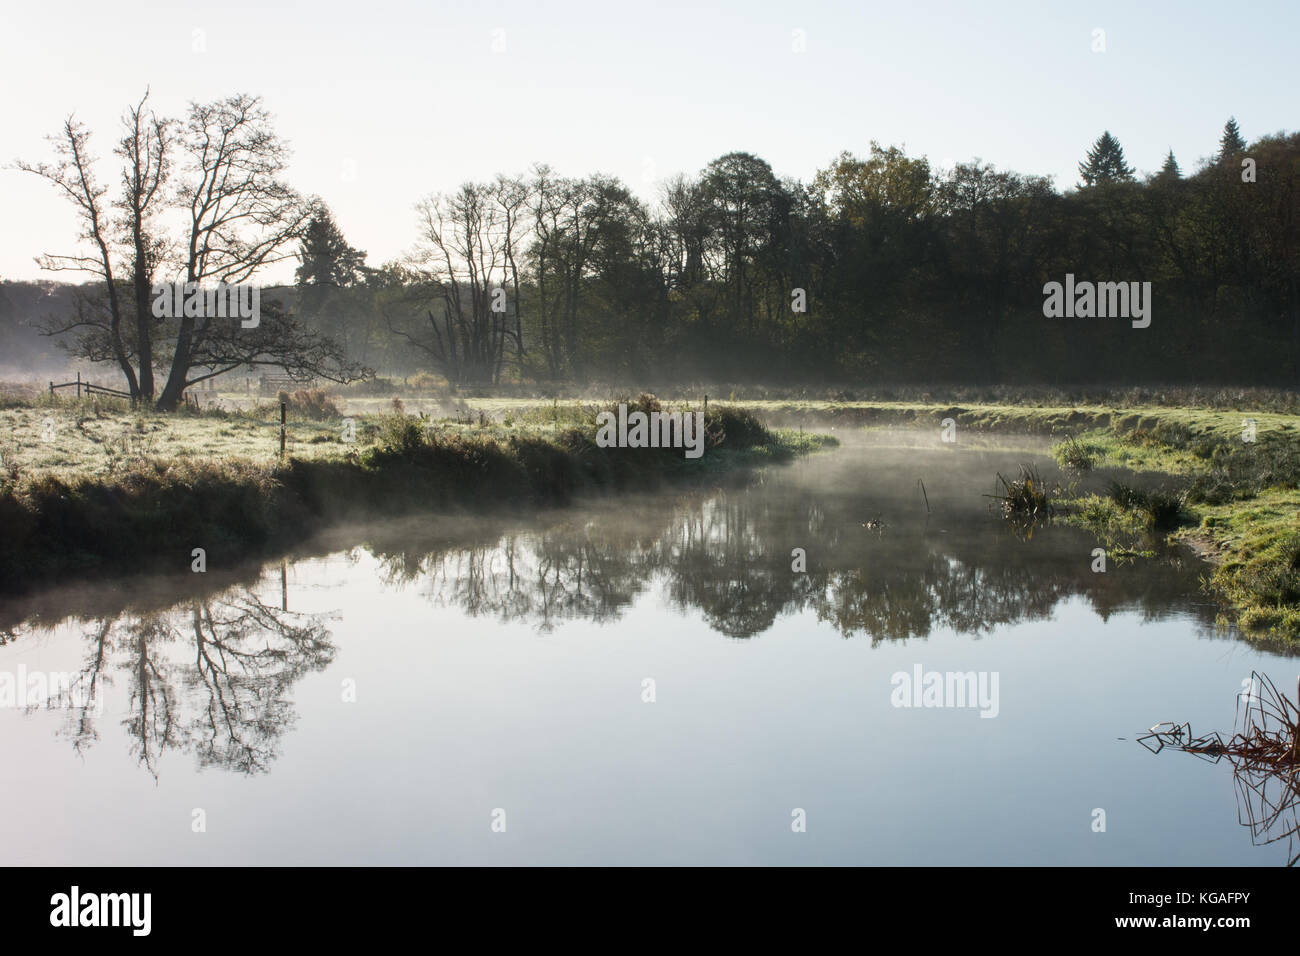 Frosty Landschaft des Flusses Wey bei Thundry Wiesen in Surrey, UK, im November. Ein schöner Tag in der englischen Landschaft. Stockfoto